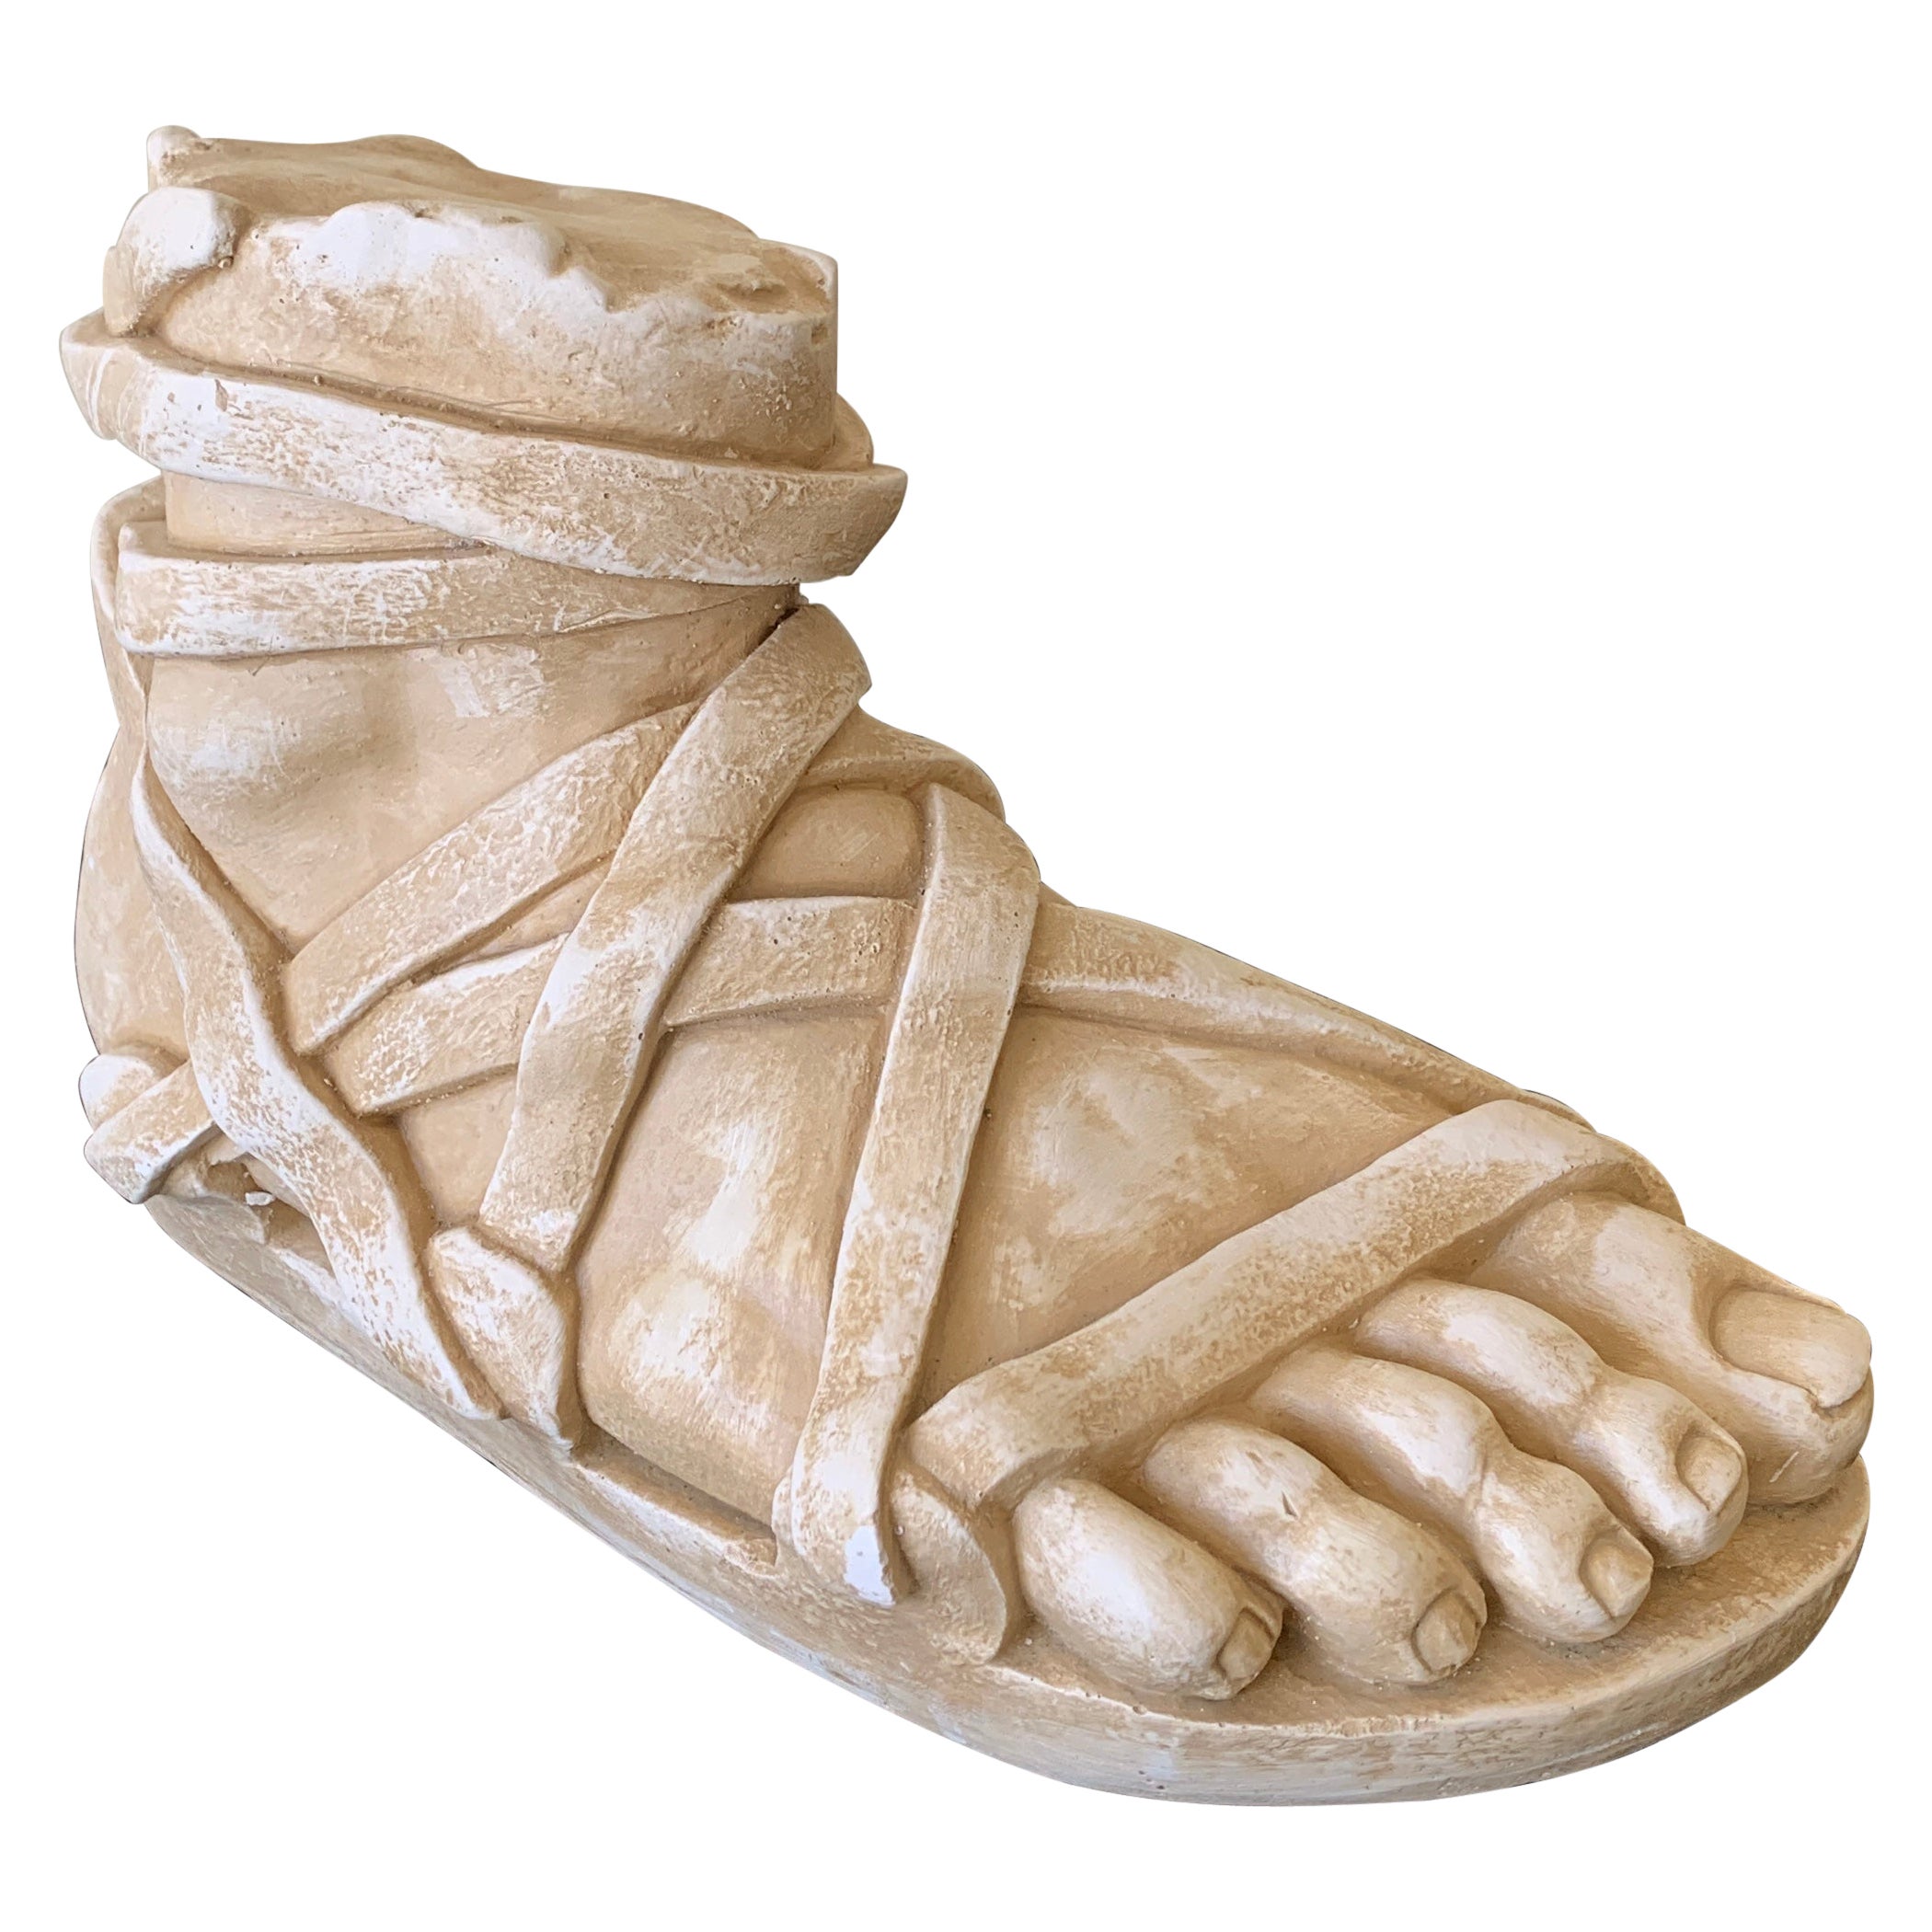 Griechische oder römische Gips-Fußskulptur im Grand Tour-Stil